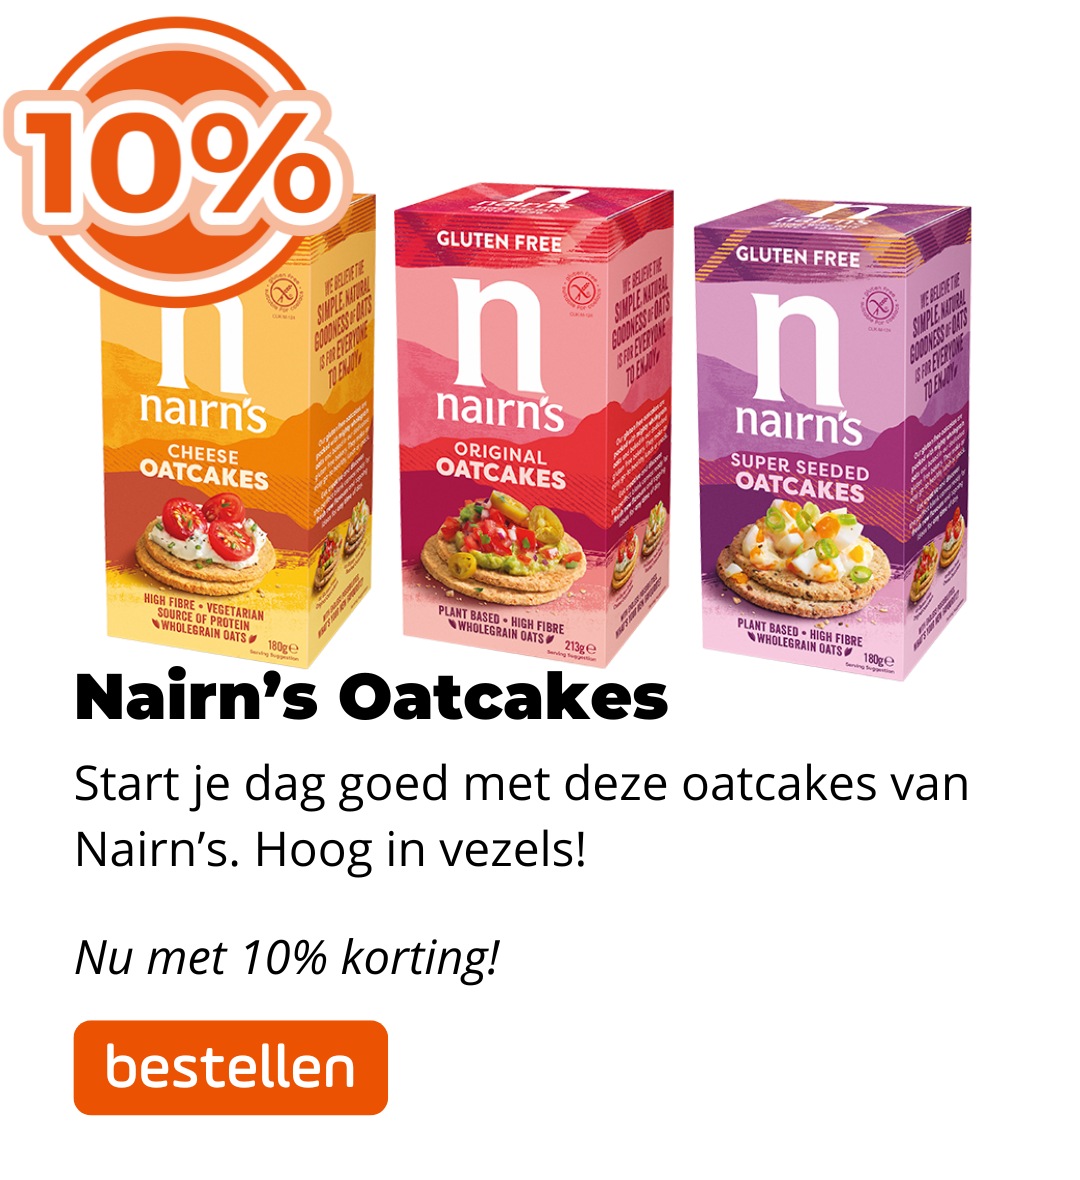 Nairn's Oatcakes 10% korting